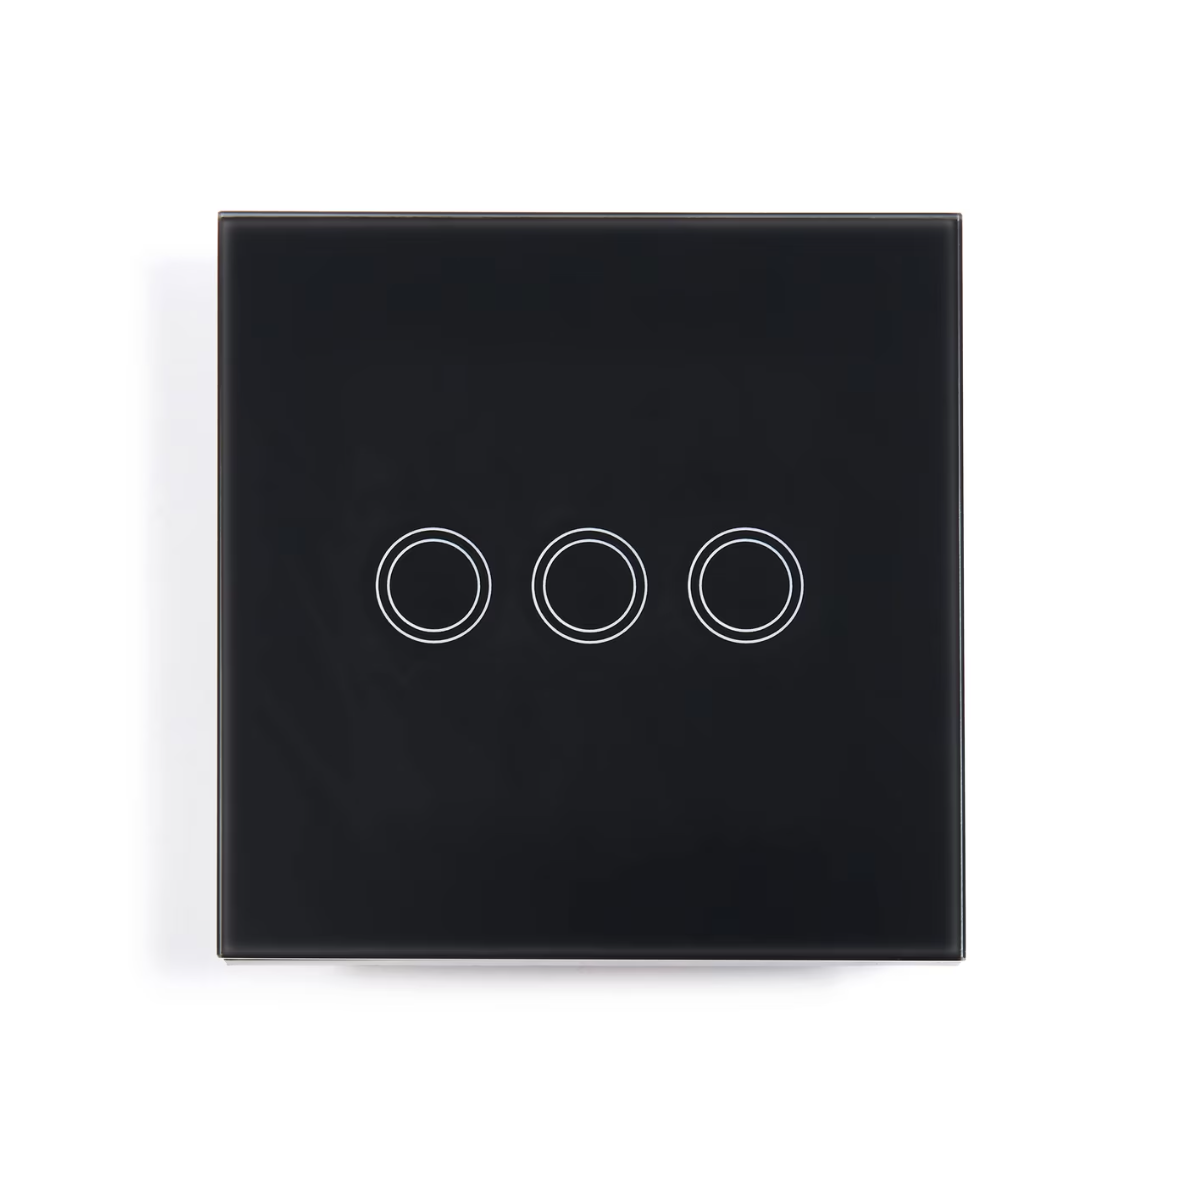 Intrerupator triplu cu touch, Zola®, butoane iluminate, panou sticla, 8.6x8.6x3.3 cm, negru